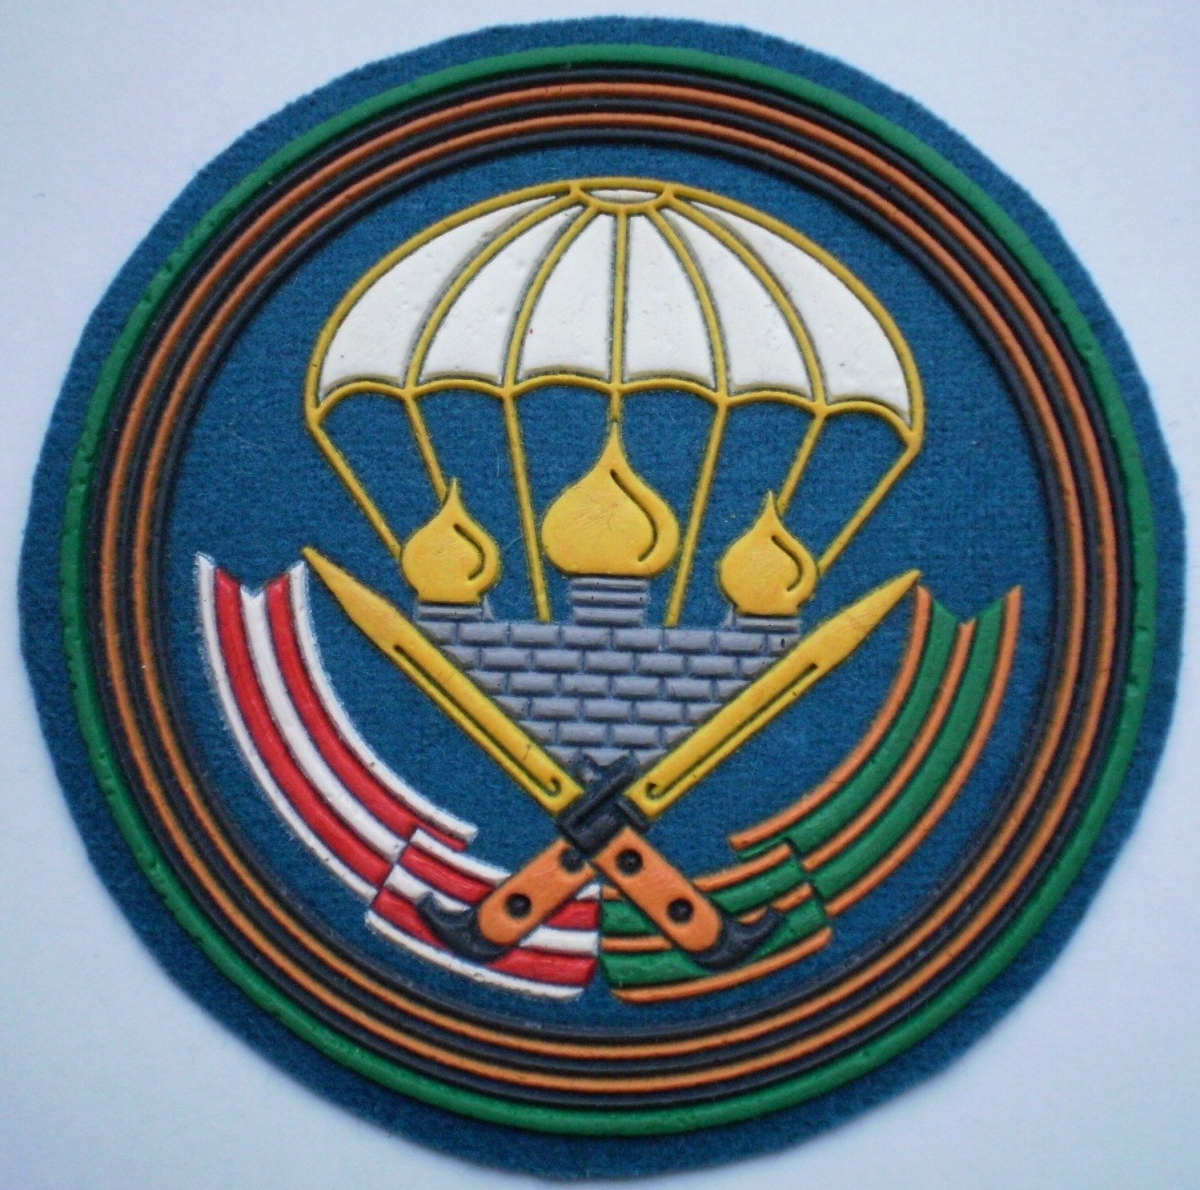 51st Airborne regiment